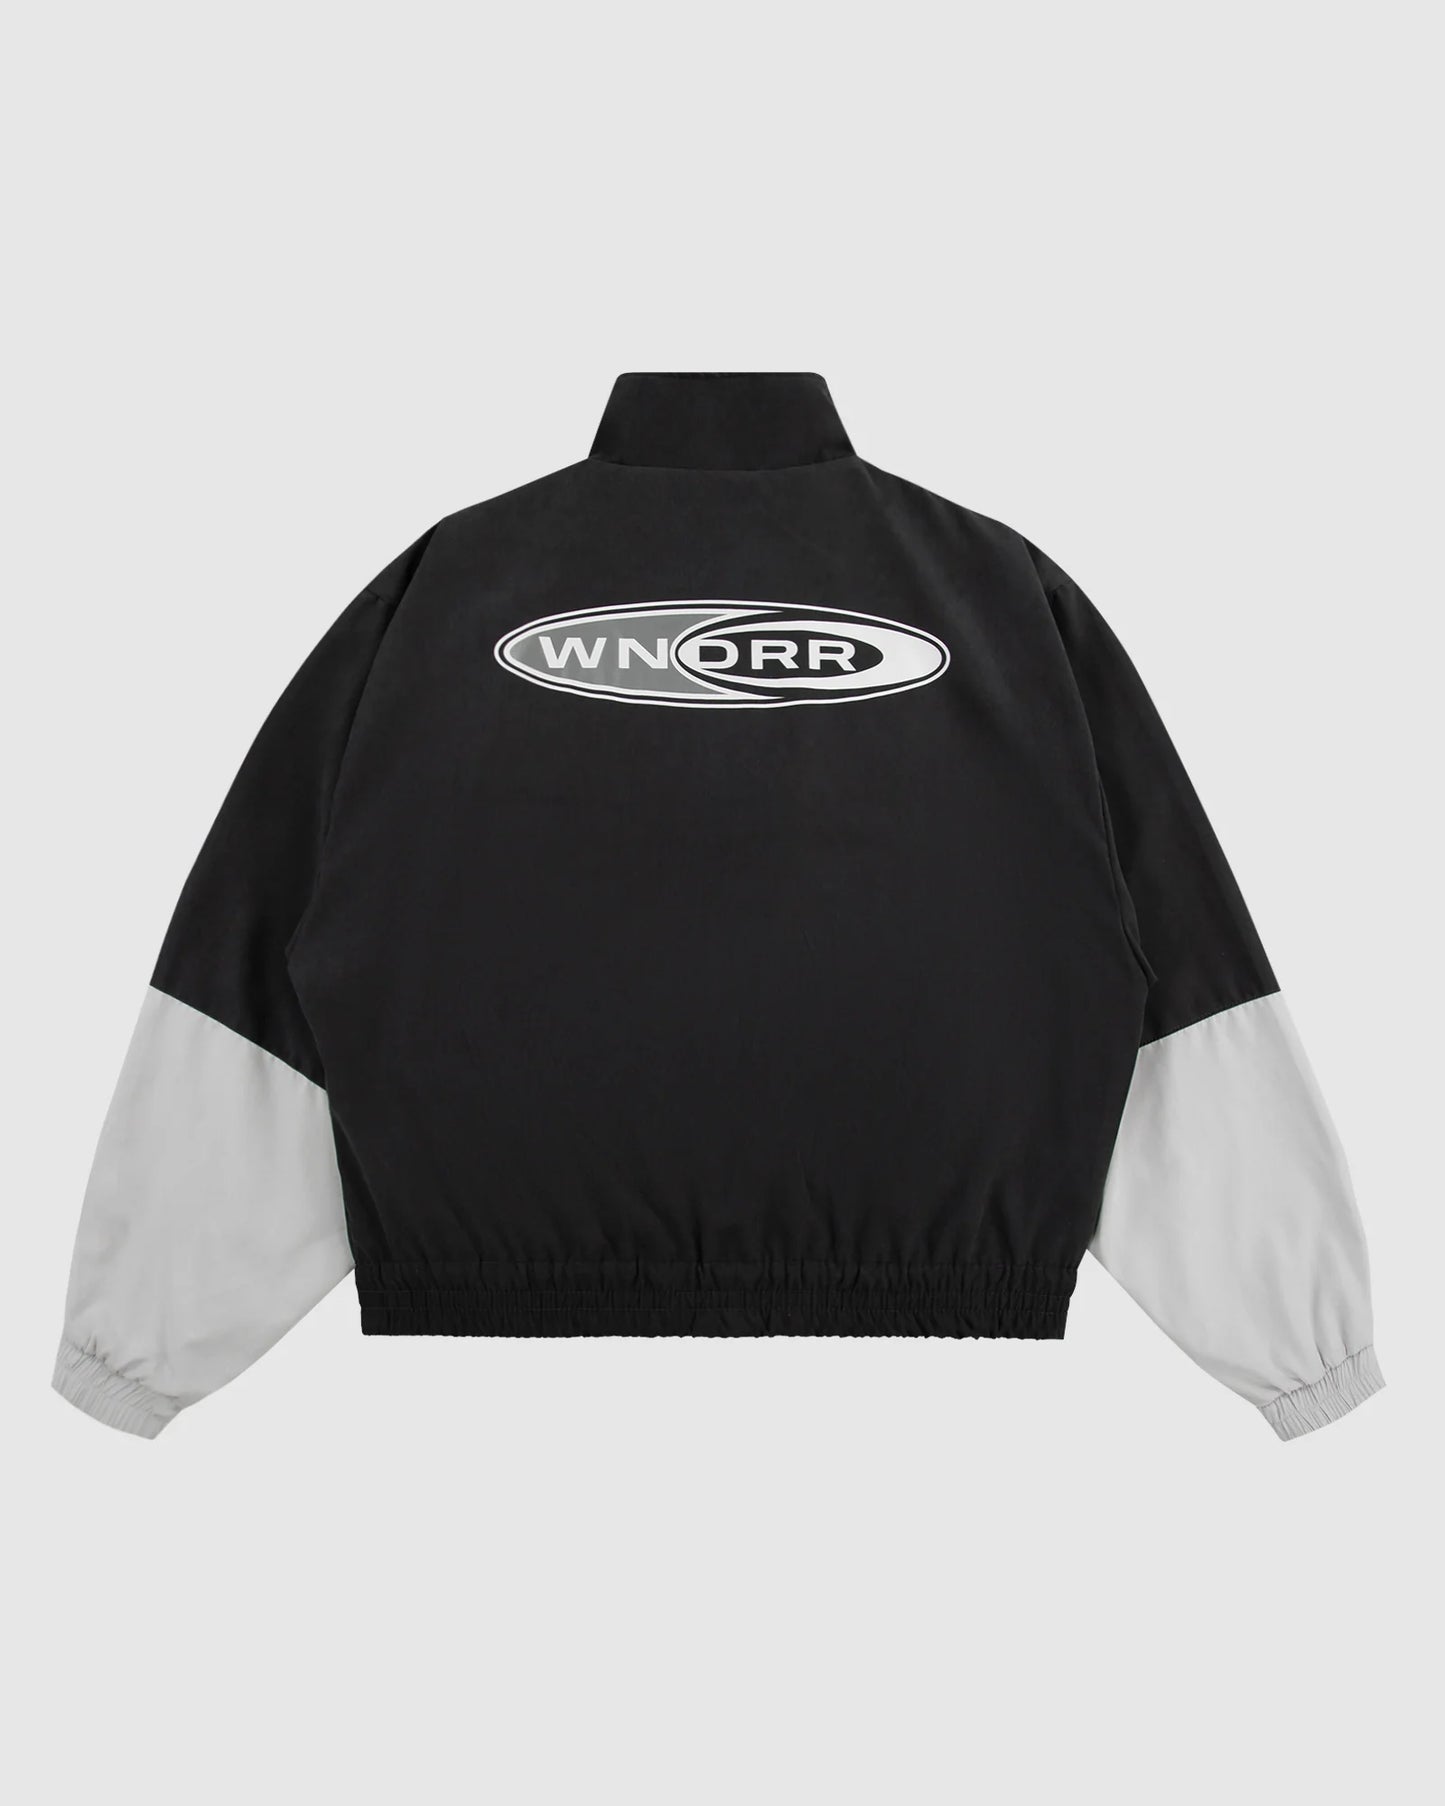 WNDRR Station Mens Sport Jacket - Black/Grey